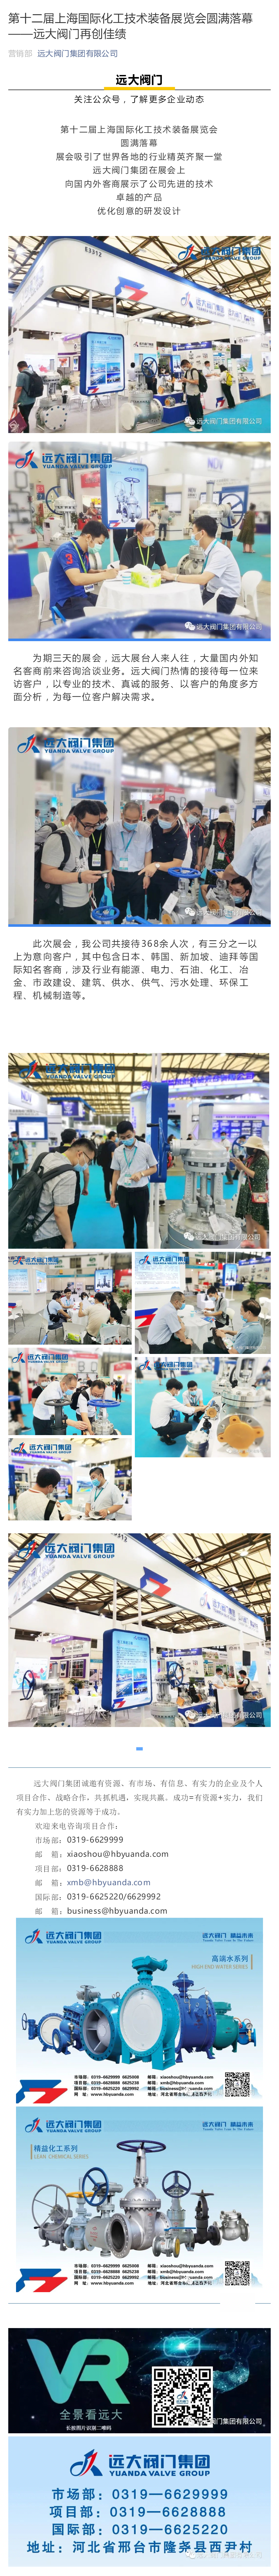 第十二屆上海國際化工技術裝備展覽會圓滿落幕--遠大閥門再創佳績